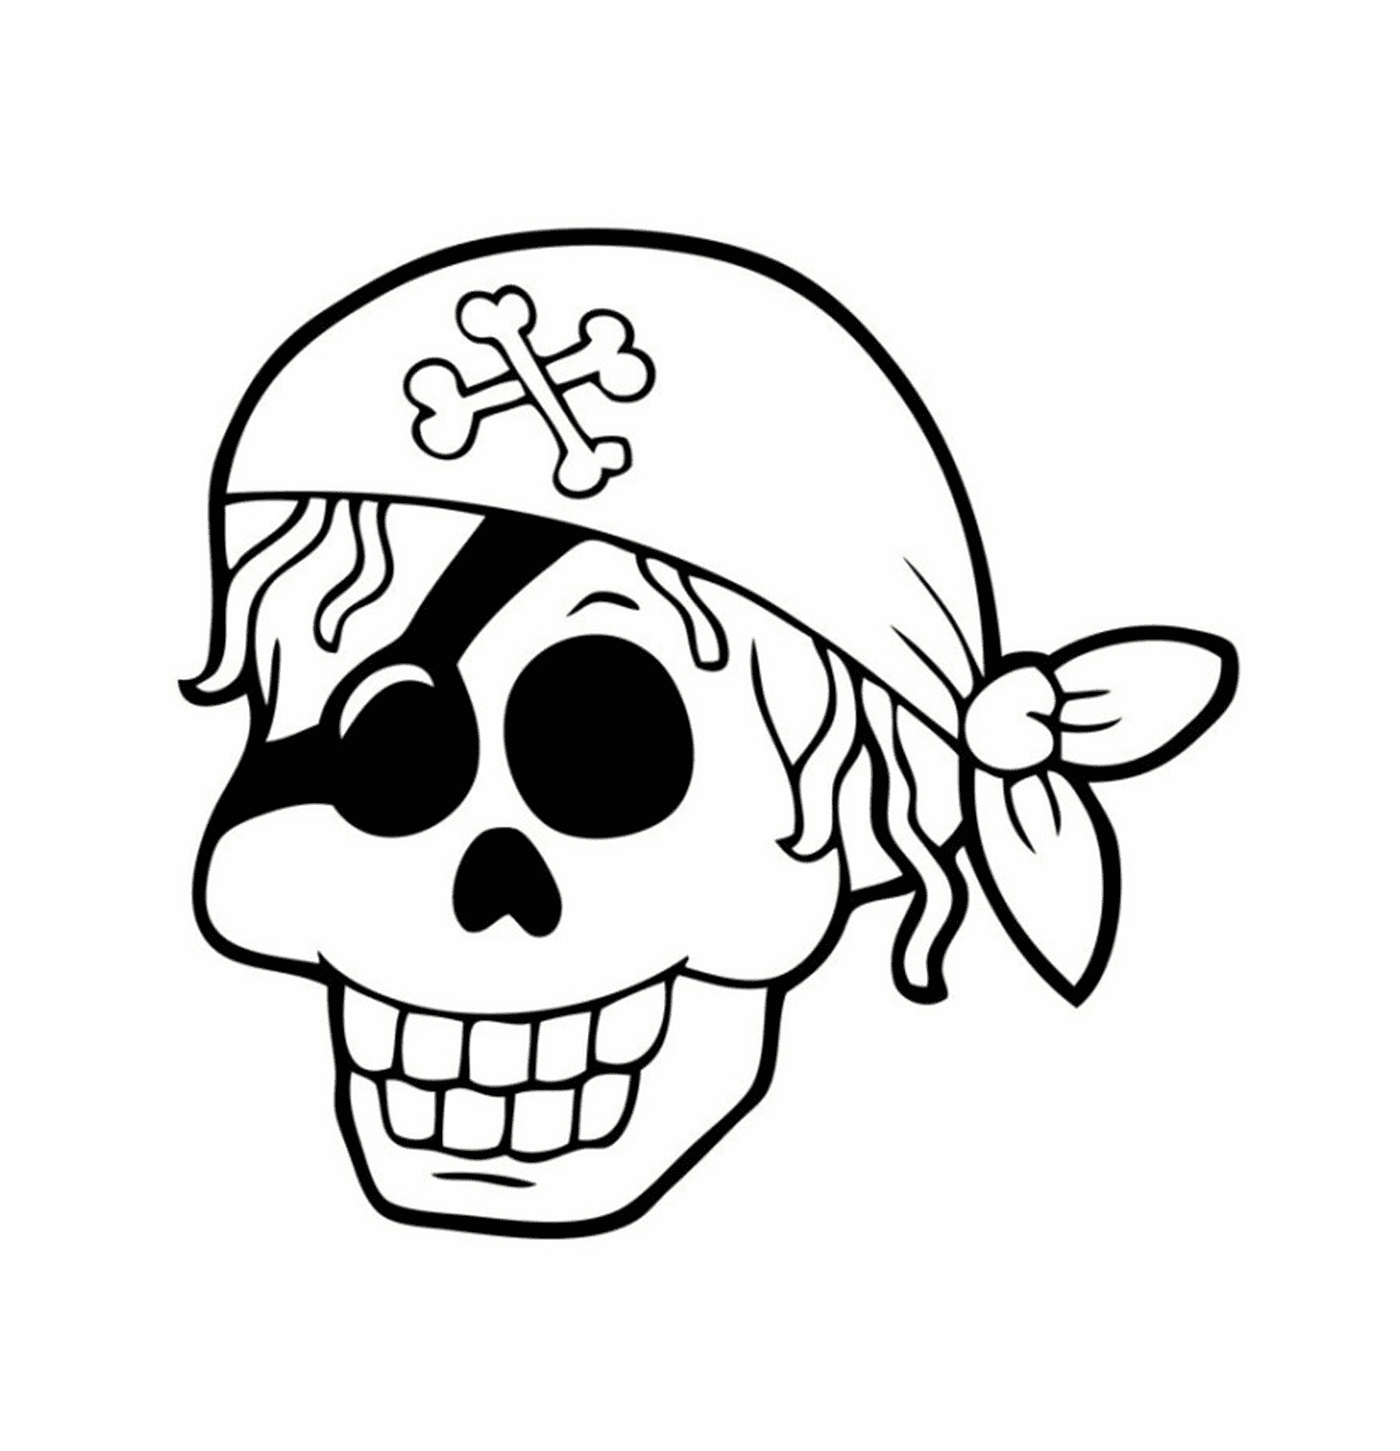  Страшный пиратский глава смерти 